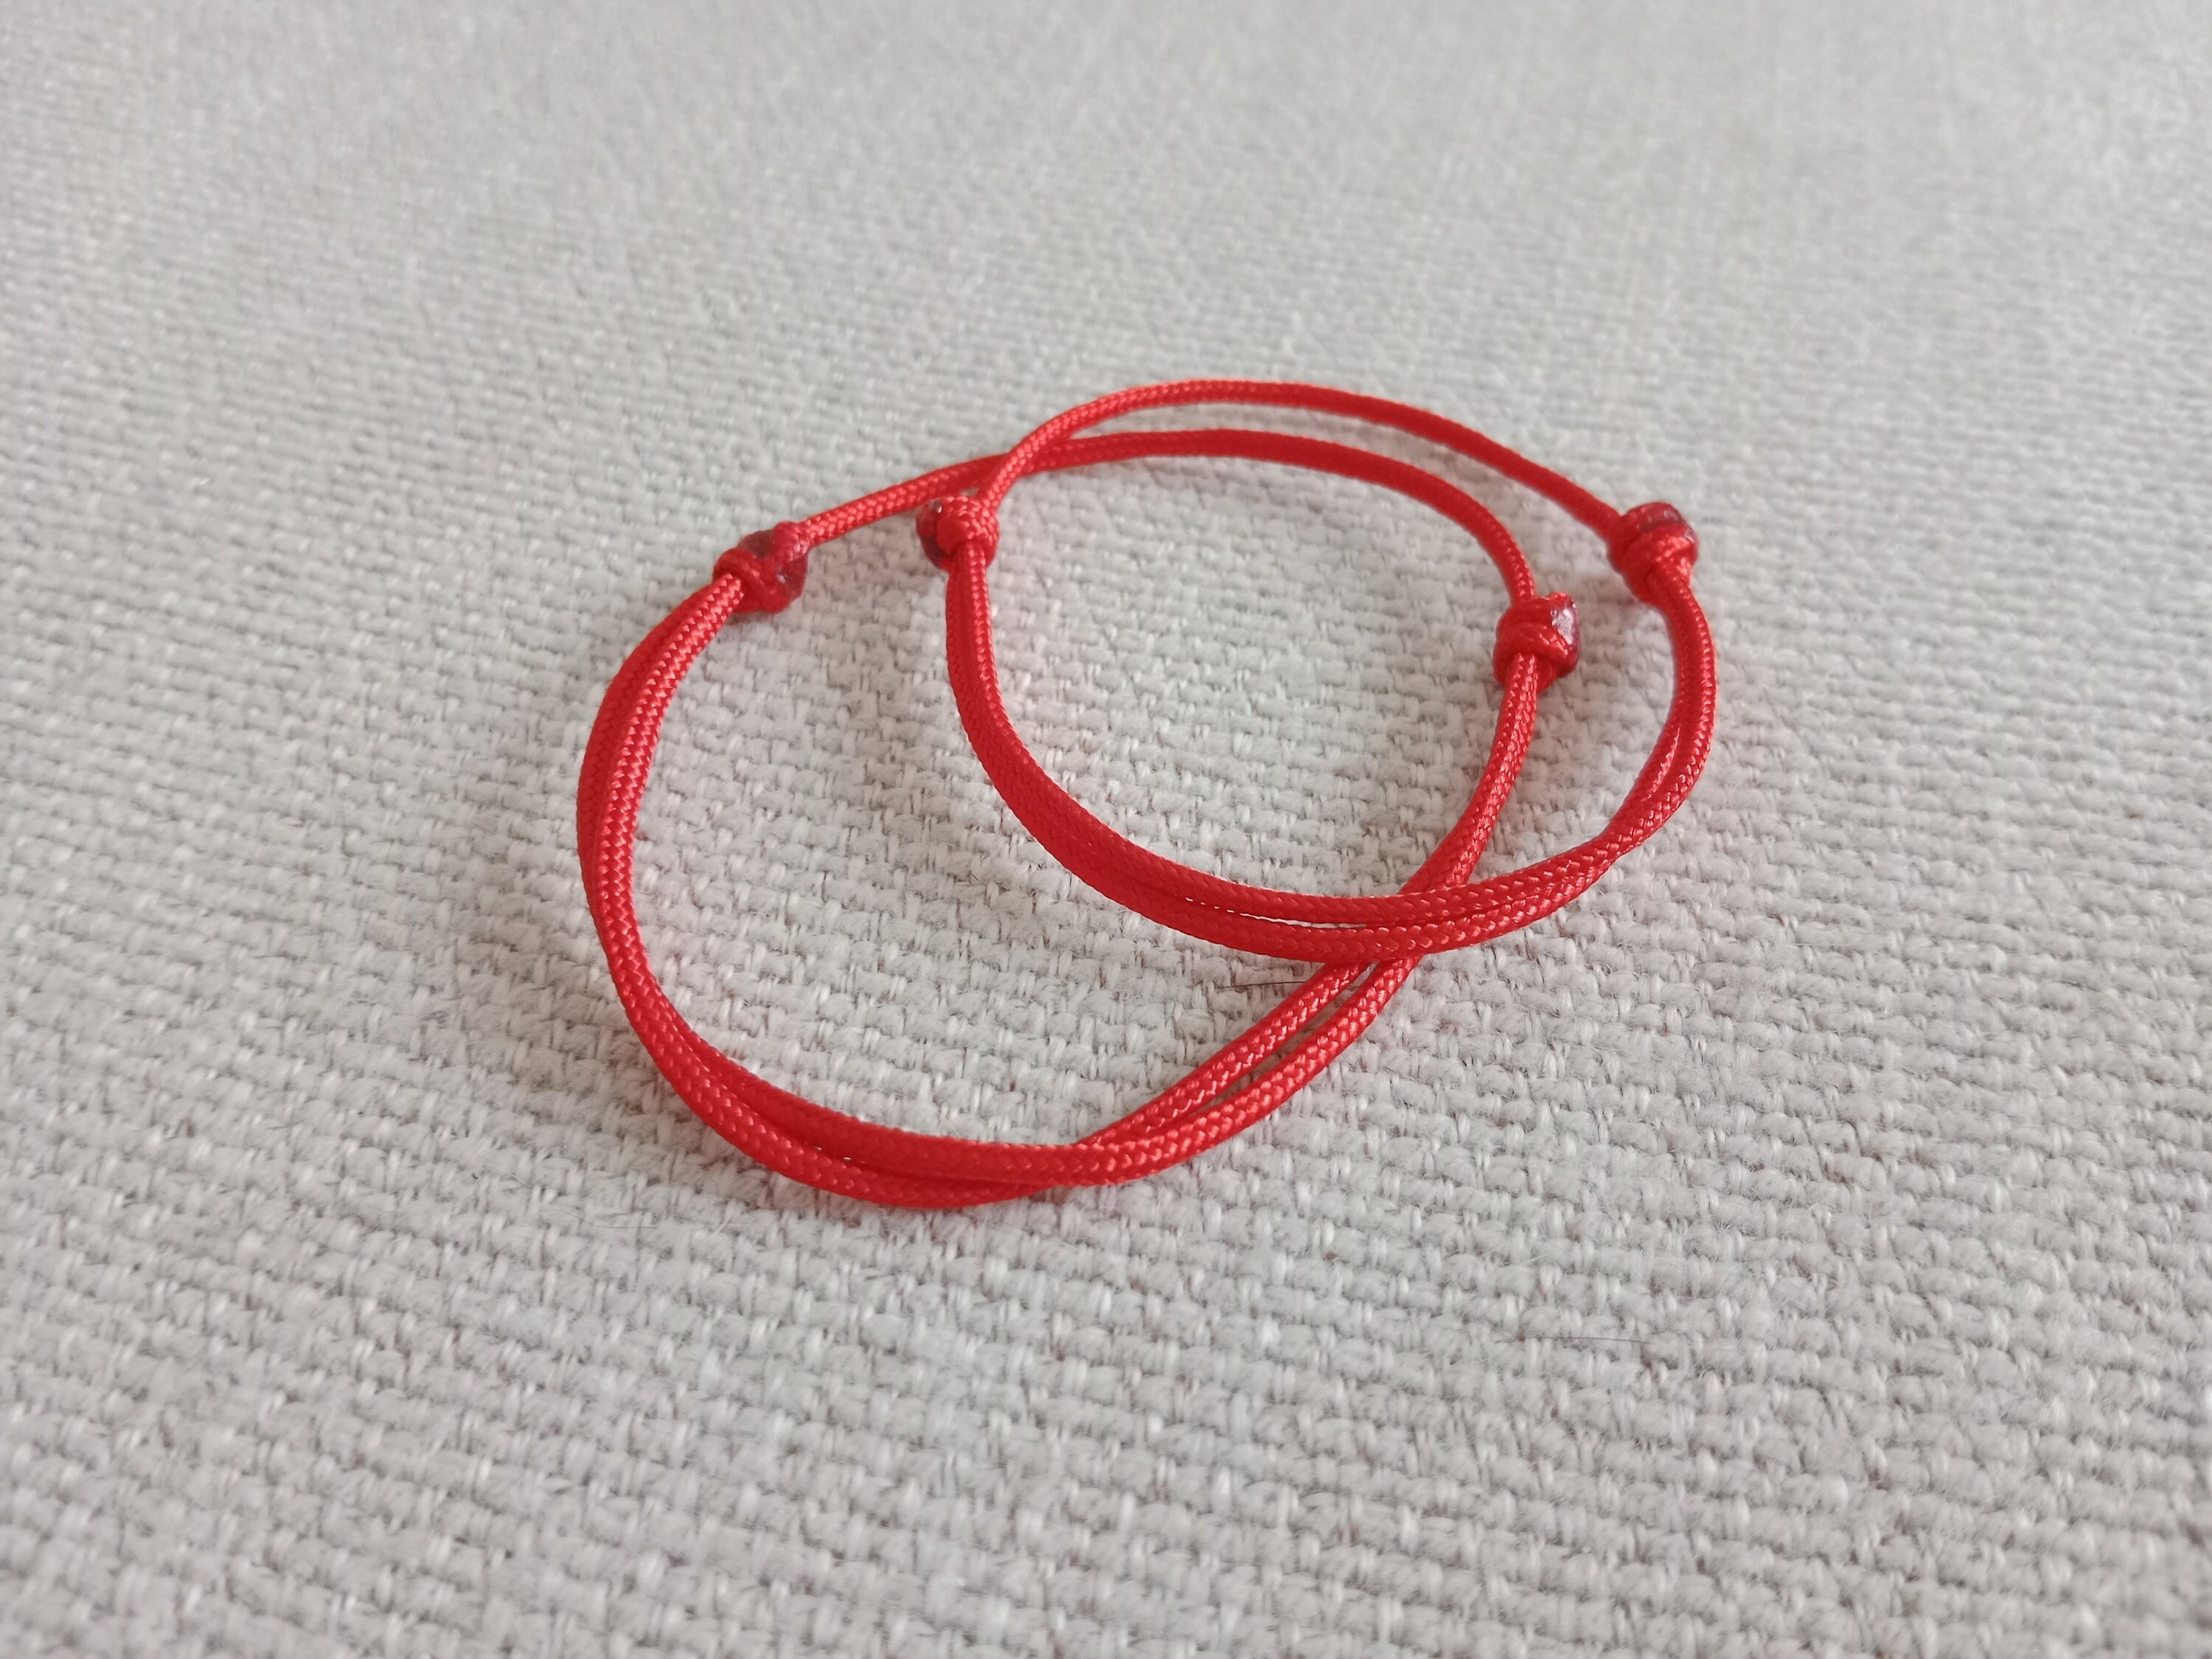 Red Cord Bracelet, Red String Bracelet, Red Lucky Bracelet, Braid Bracelet,  Yoga Bracelet, Simple Surfer Bracelet red Cord 004 